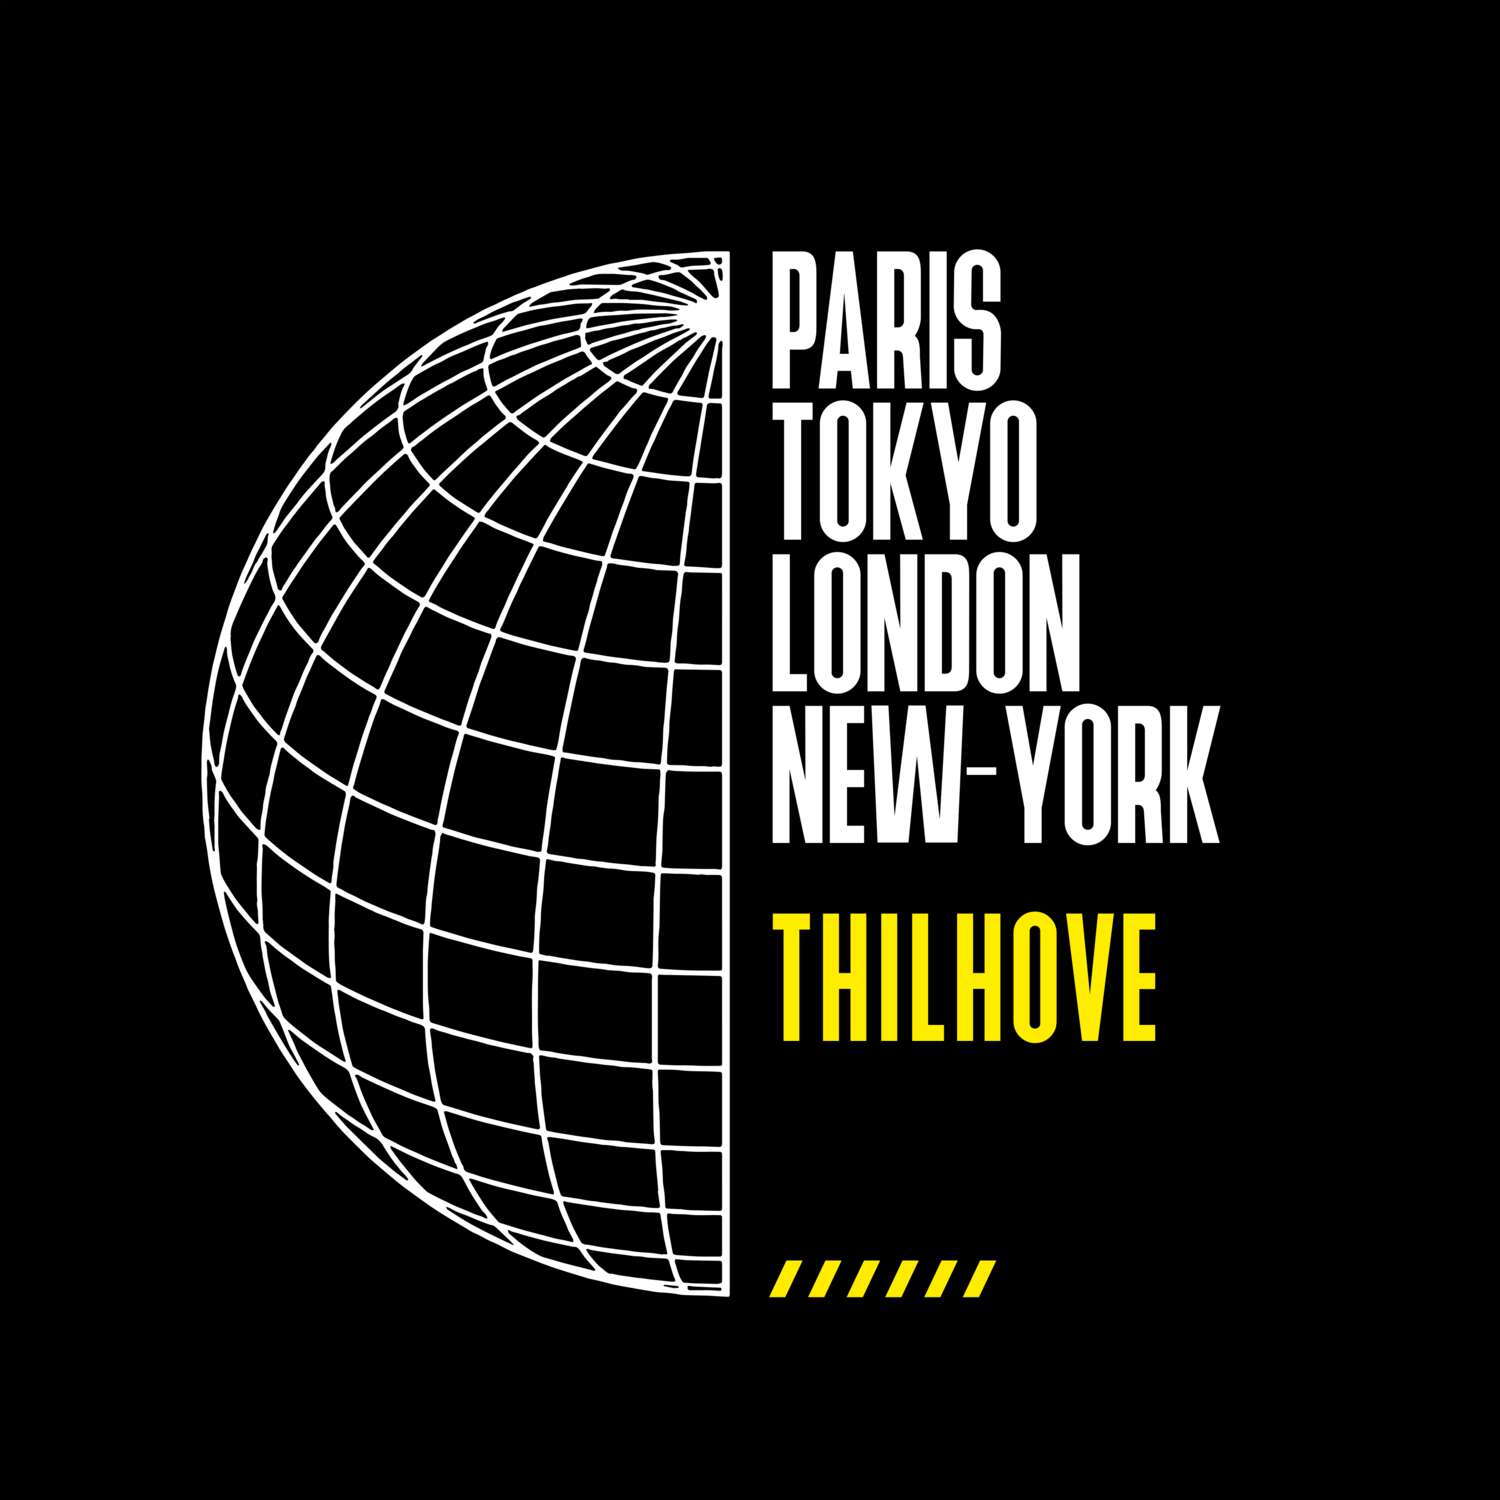 Thilhove T-Shirt »Paris Tokyo London«